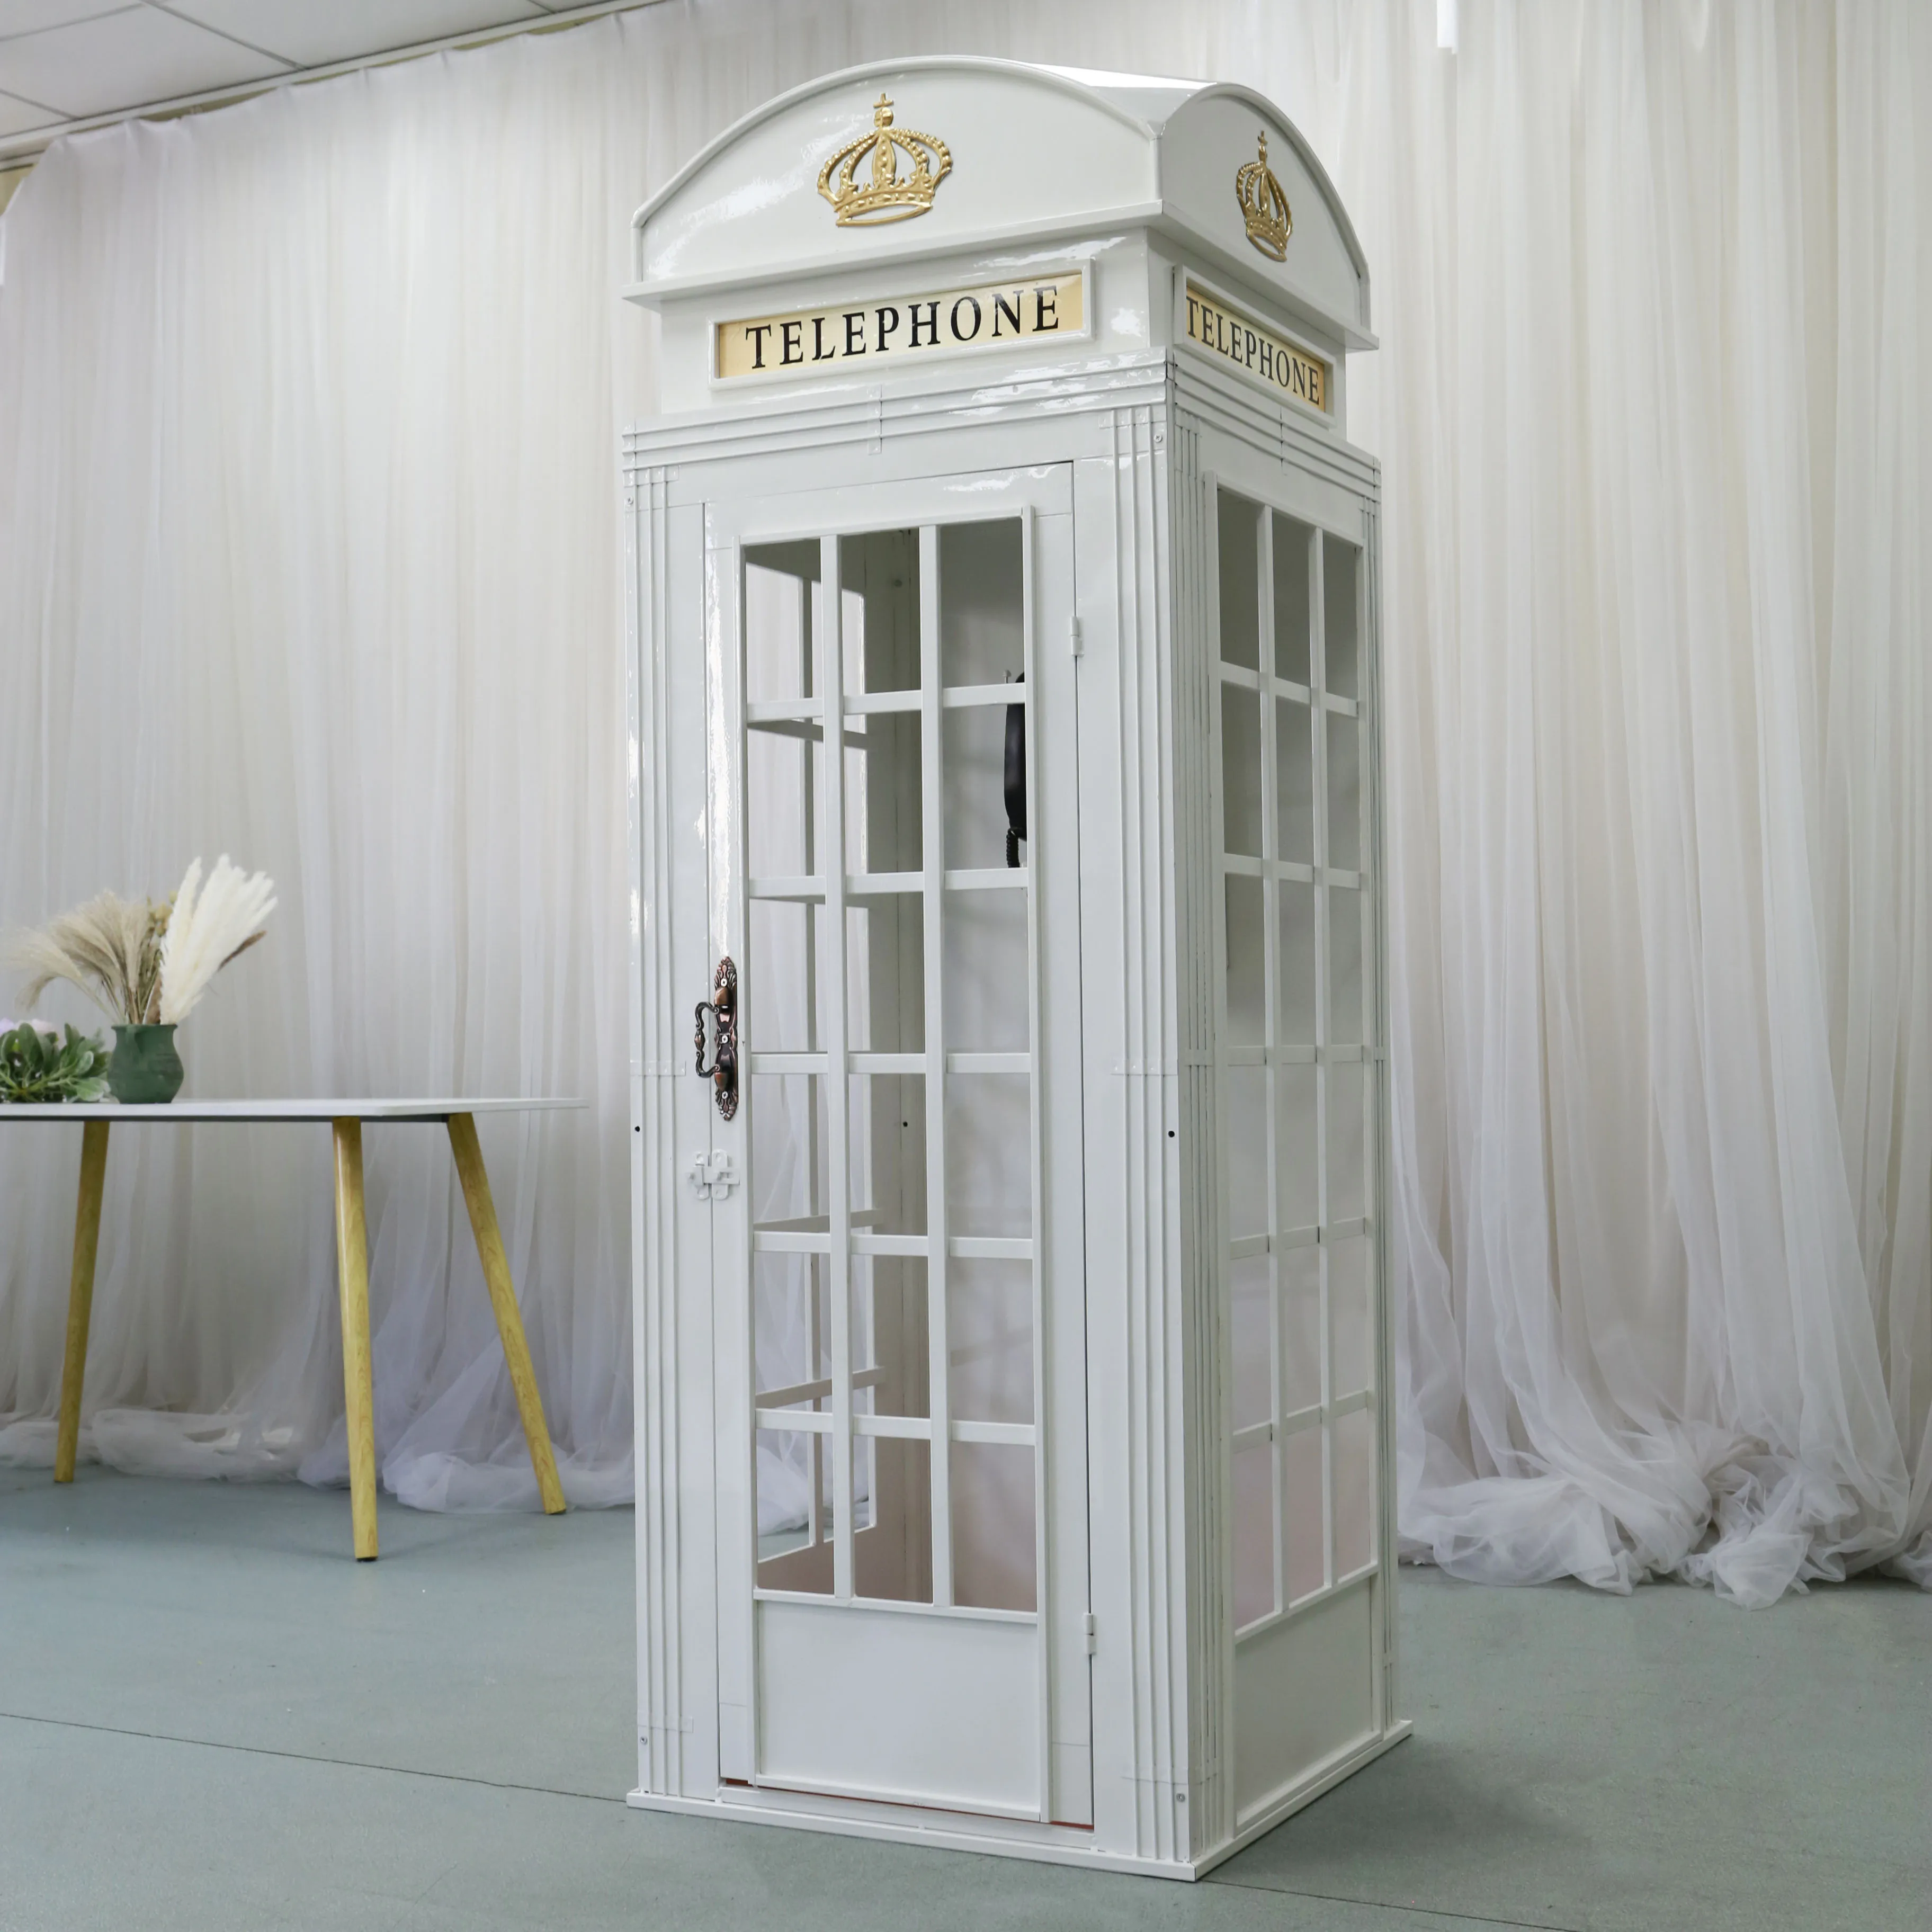 TY210707 2; Популярные белые телефонная будка британская металлическая телефонная будка для свадьбы, декорация для дома и отеля (1600564940270)